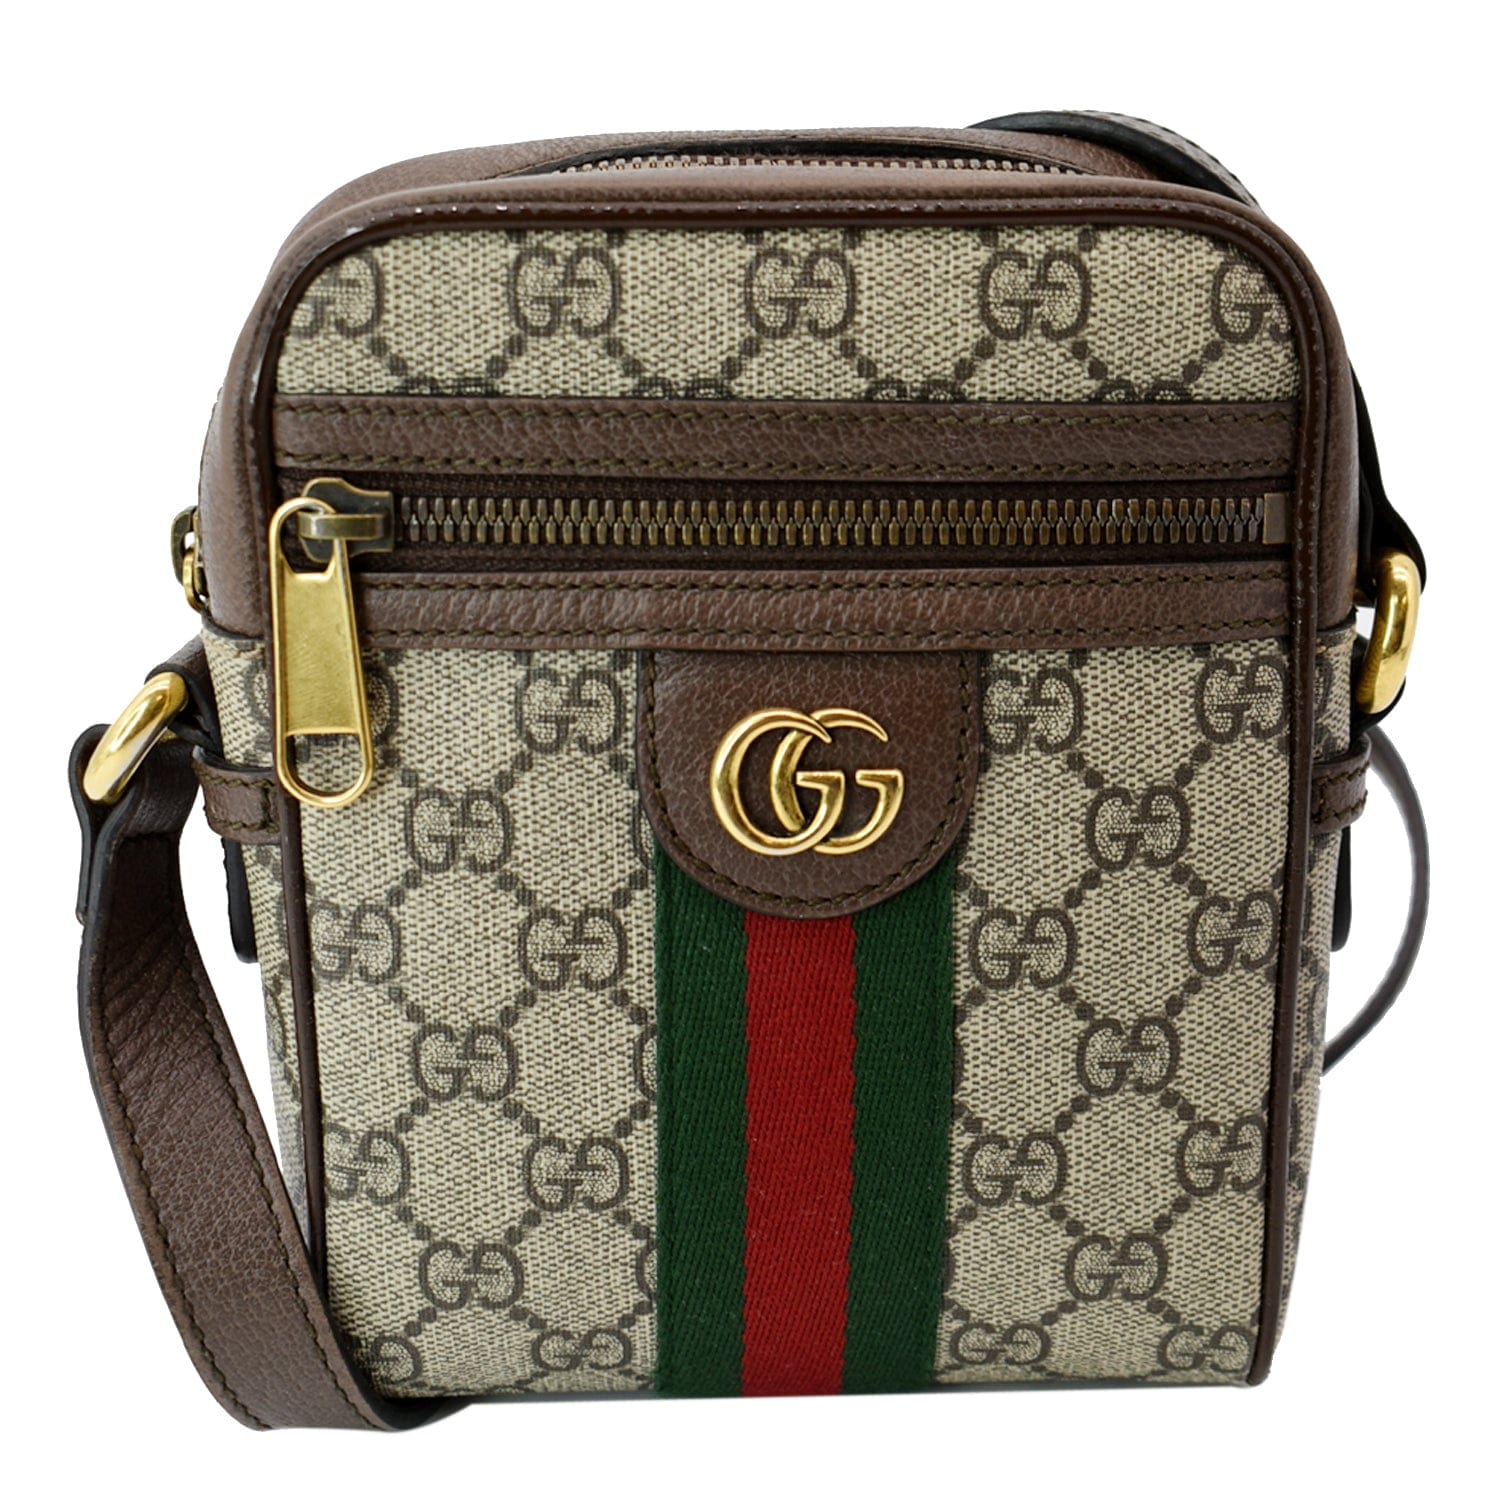 Ophidia gg supreme shoulder bag - Gucci - Women